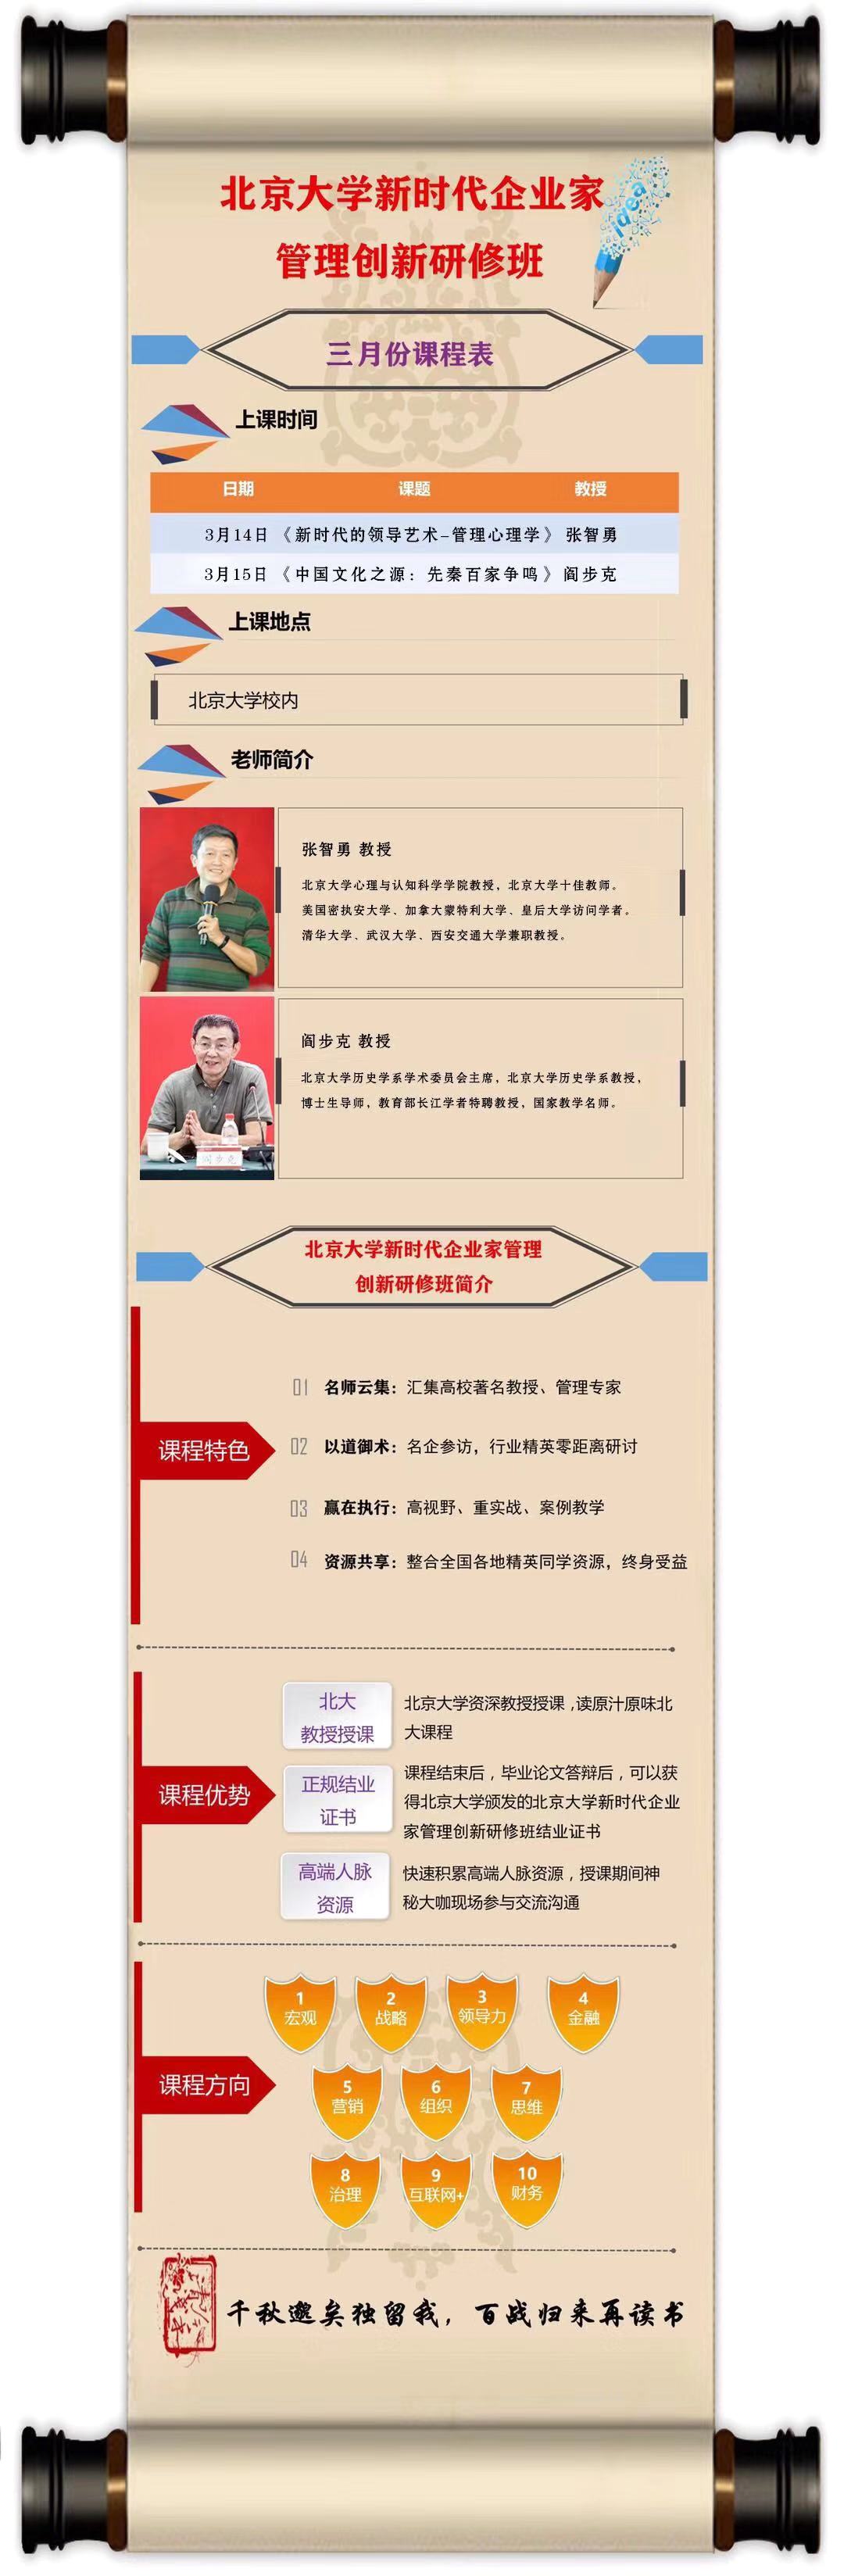 北京大学新时代企业家管理创新研修班3月课表